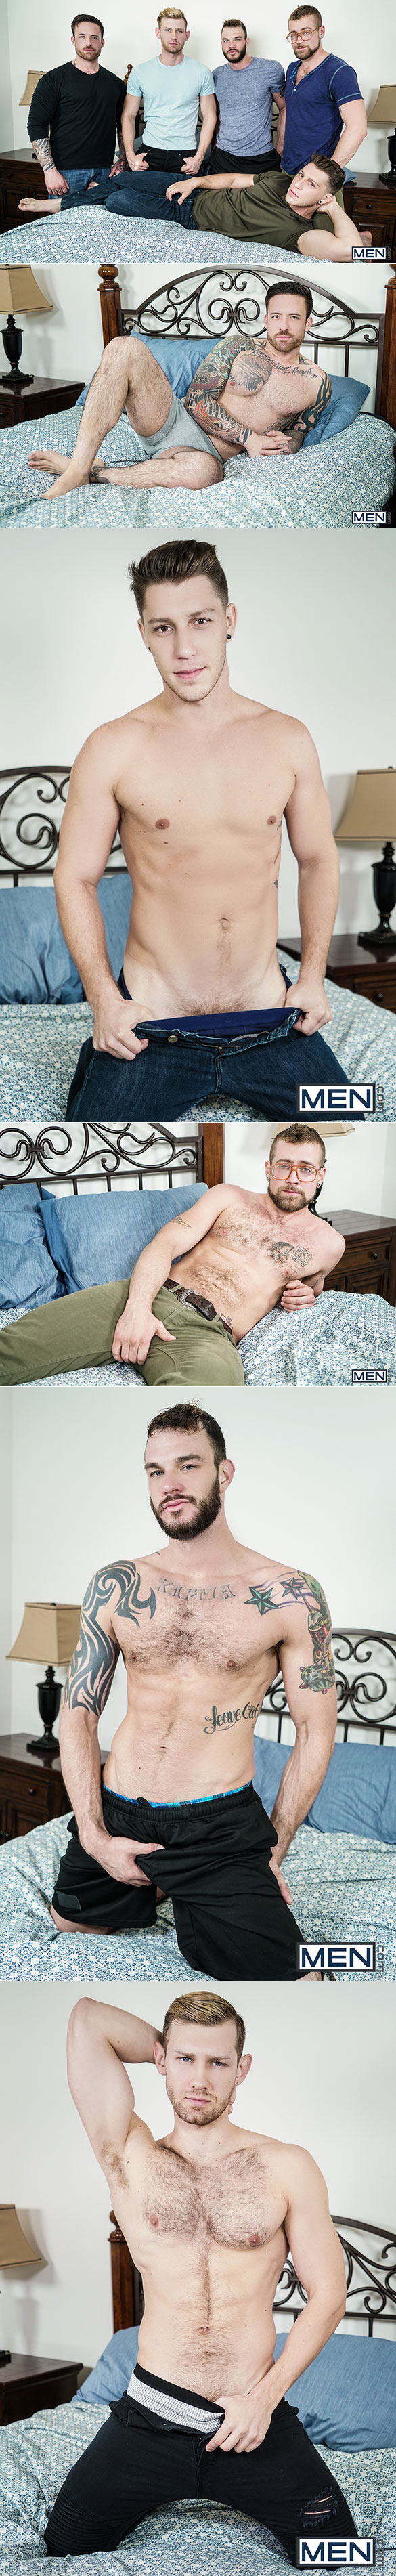 Men.com: Cliff Jensen, Jordan Levine, Paul Canon, Jay Austin and Jacob Peterson in "Gaymates, Part 3"